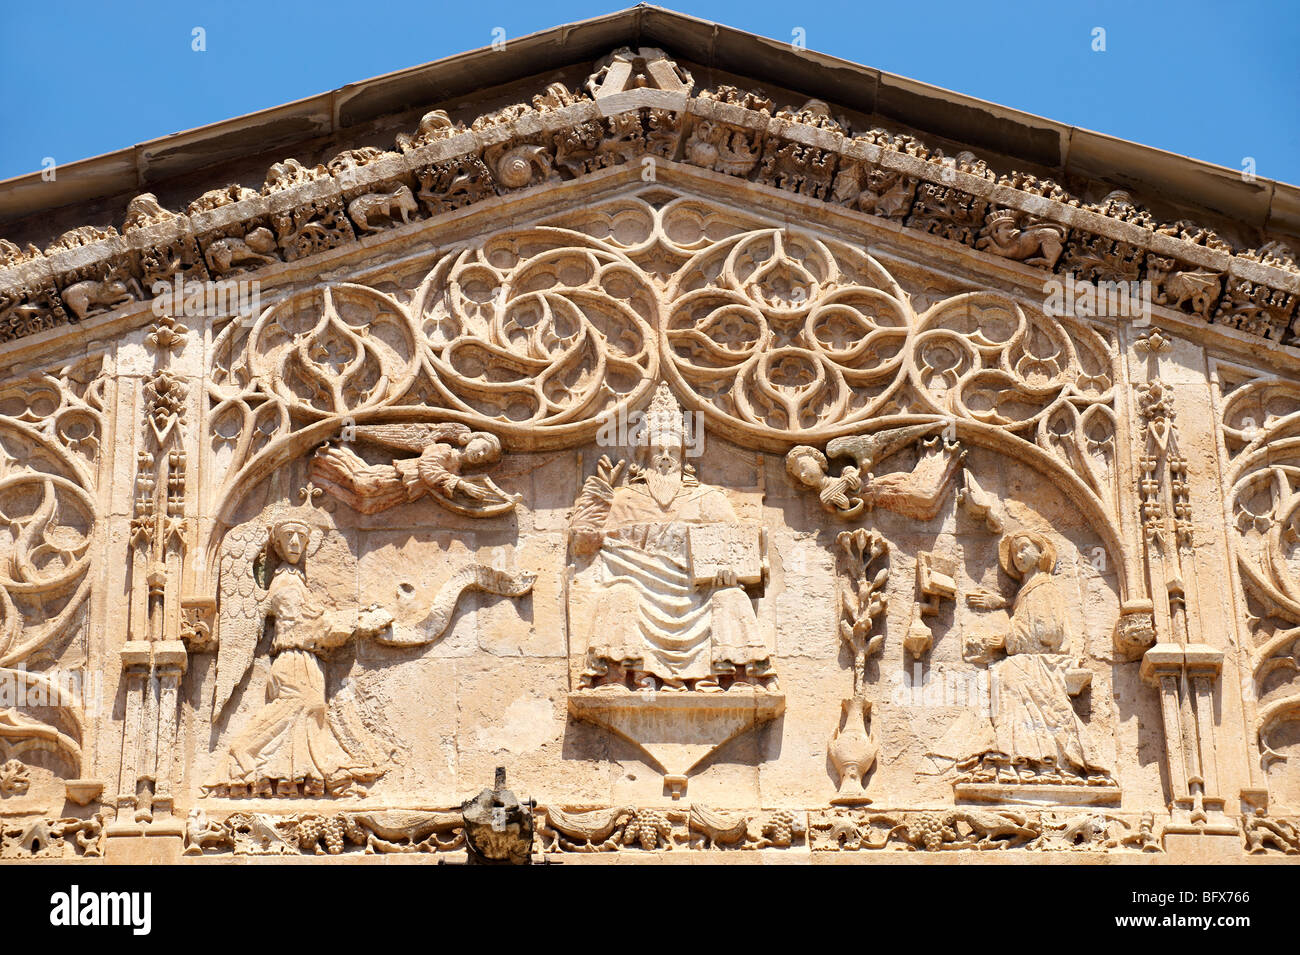 De style gothique catalan portica( 1430) par Antonio Gambara, la cathédrale de Palerme, Sicile Banque D'Images